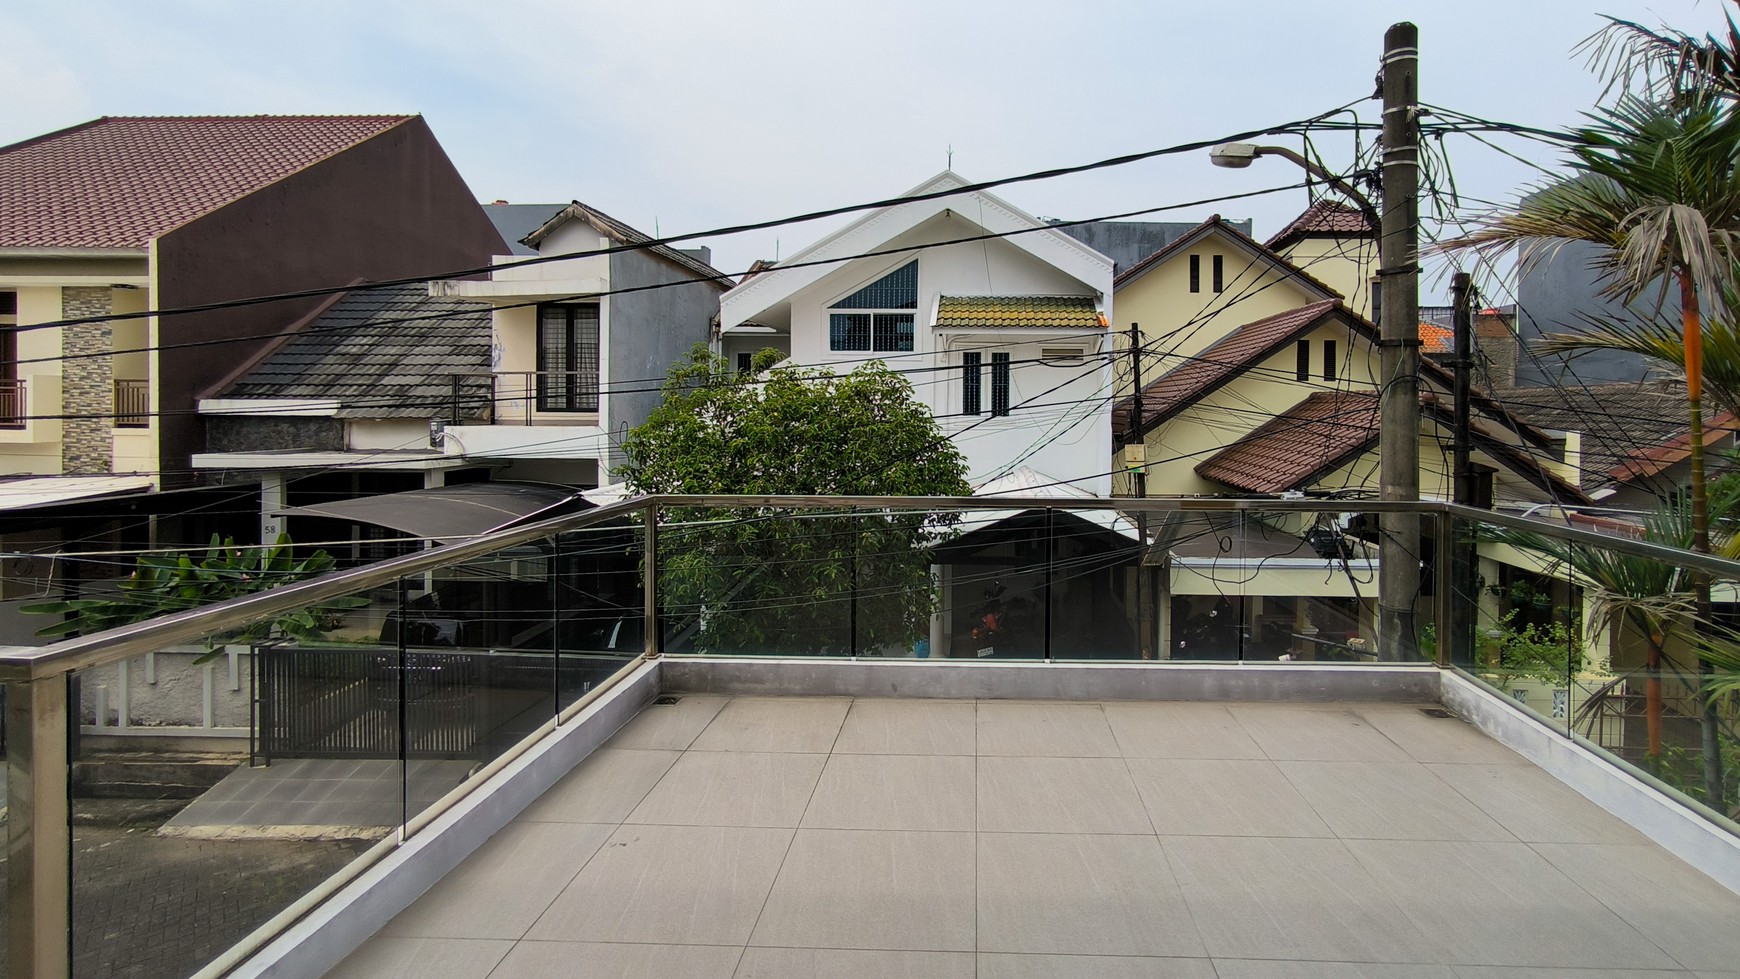 Hotsale Rumah Mewah Modern Lokasi Strategis di Bintaro Jaya 5